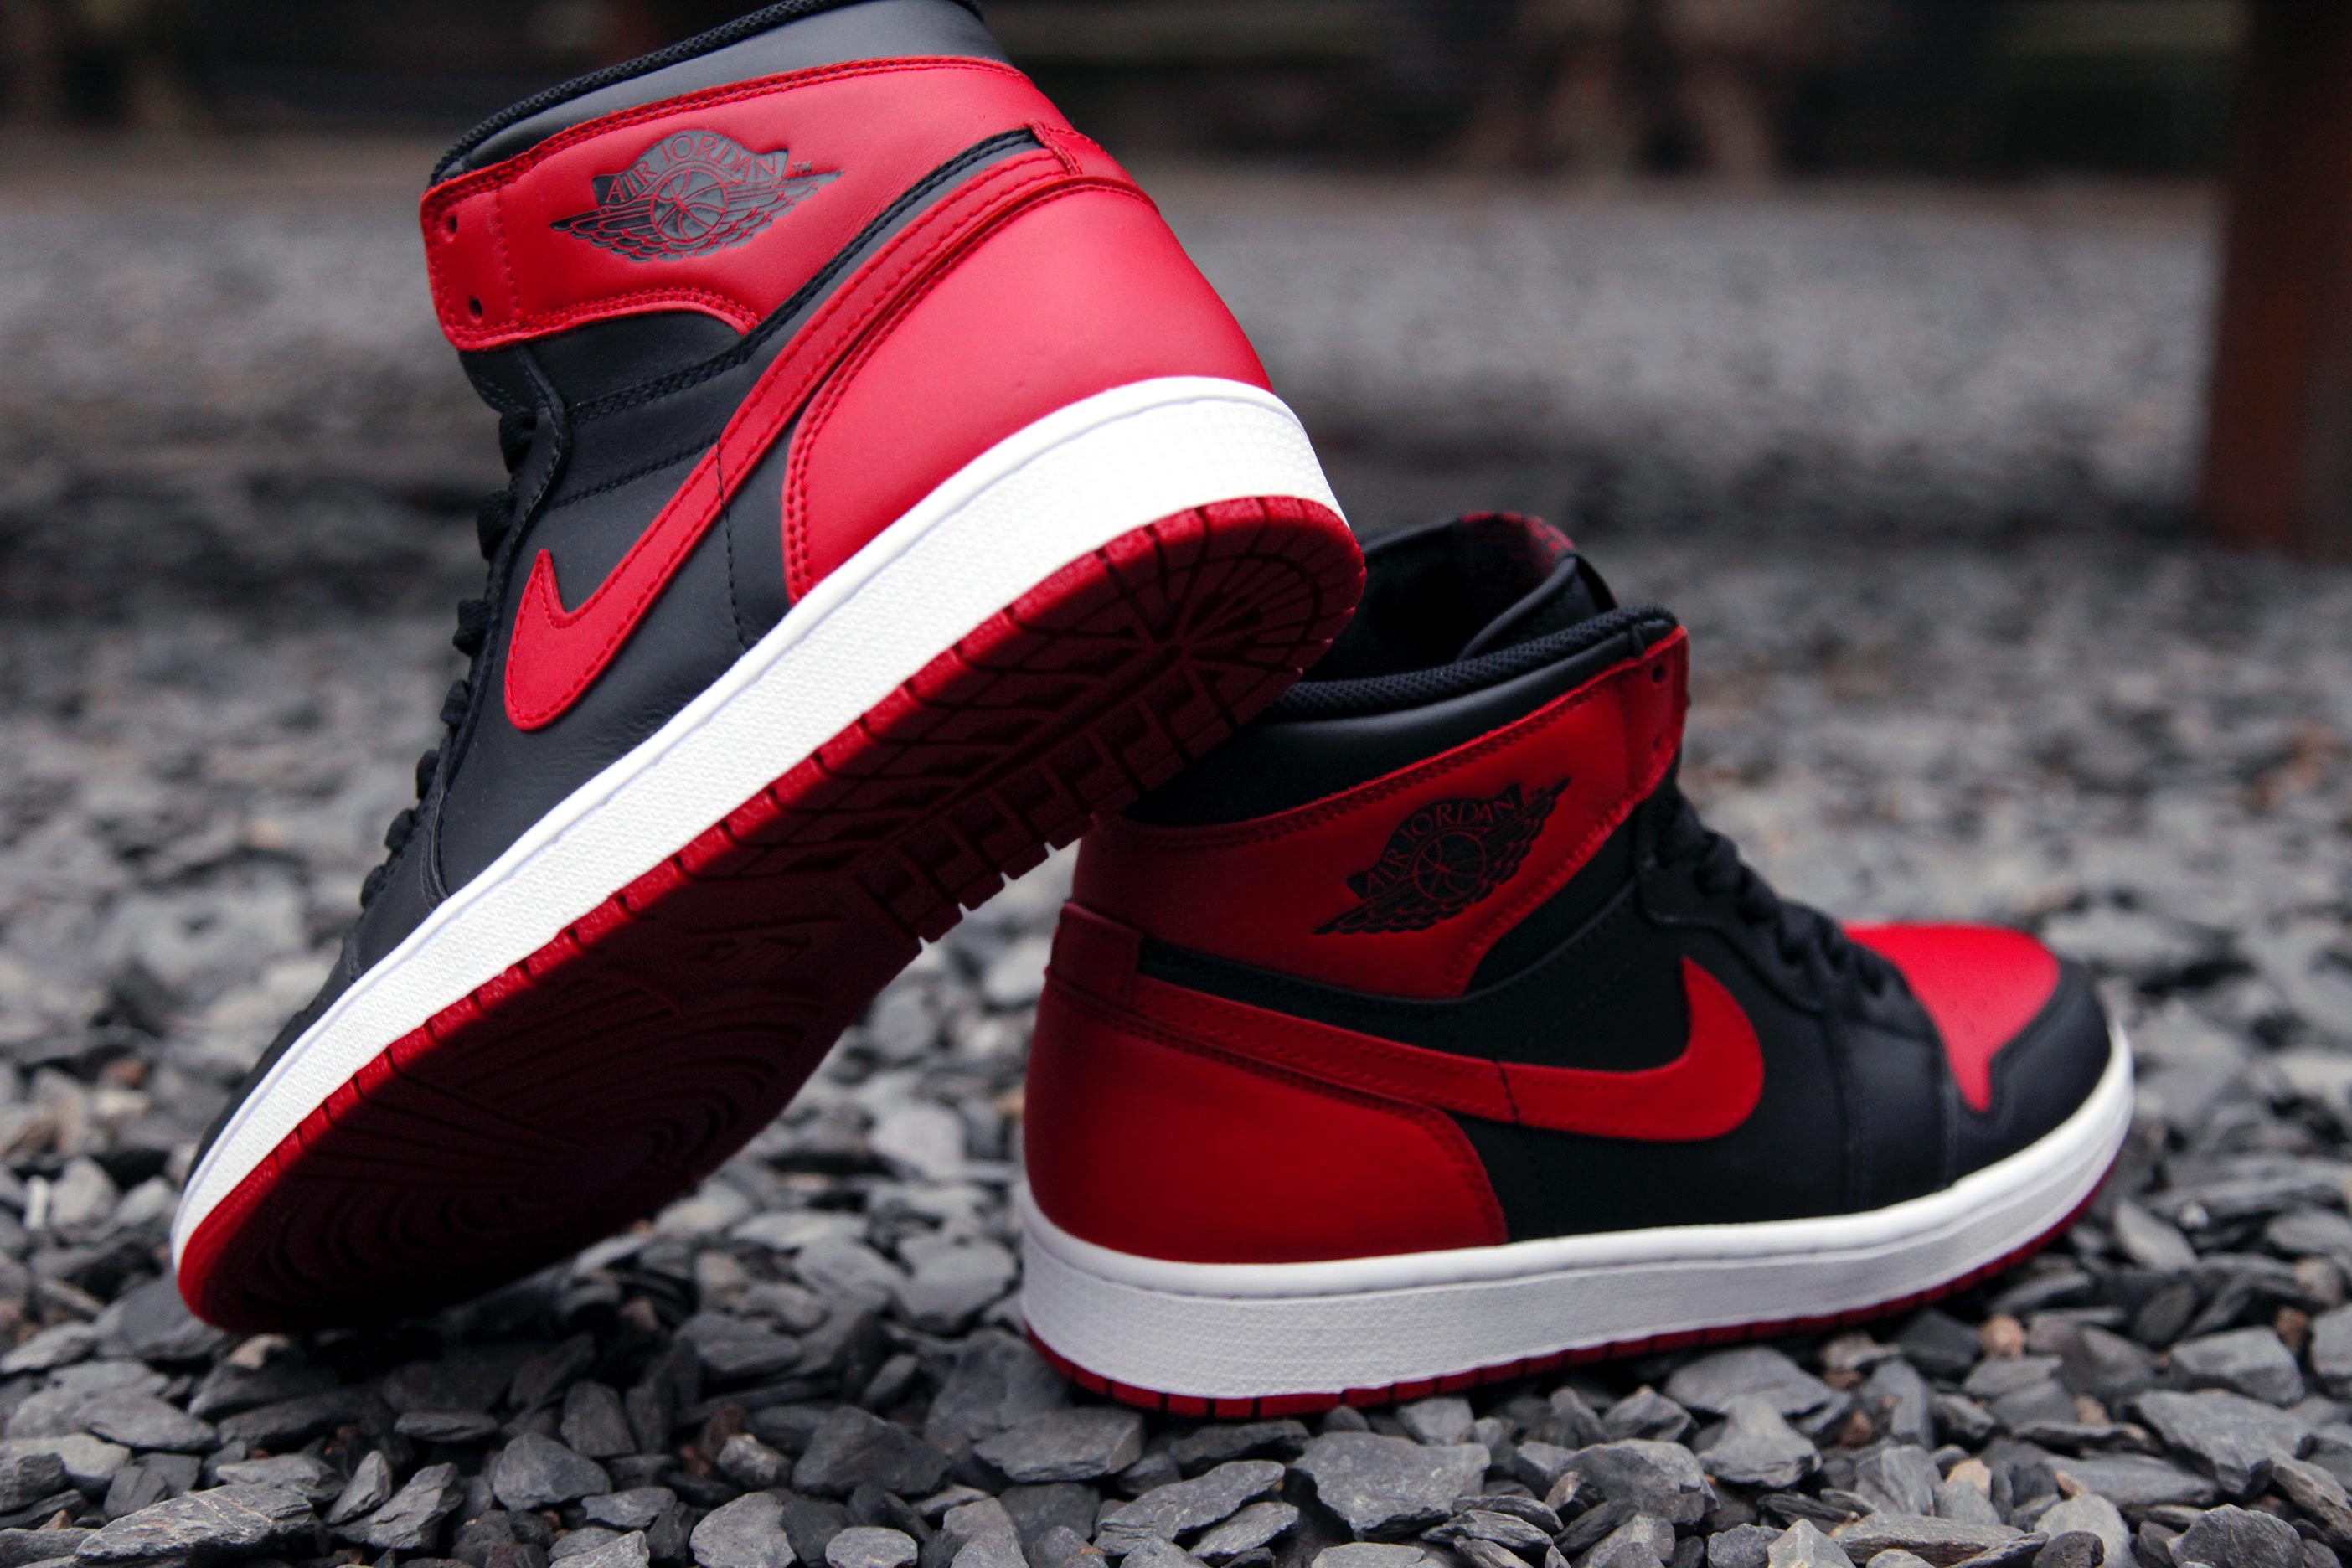 2016年発売か!? Nike Air Jordan 1 High Retro OG “Bred” – Sneaker Box（スニーカーボックス）